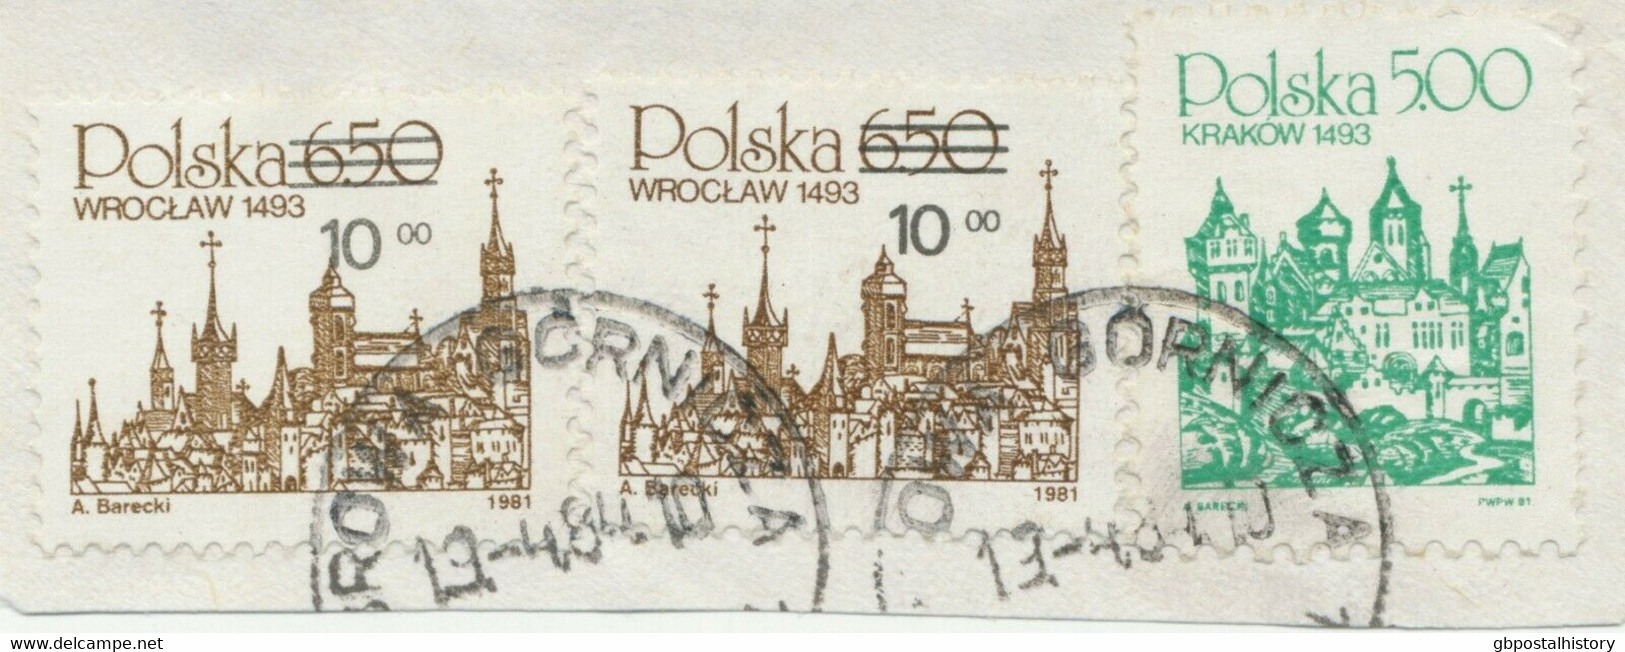 POLEN 1984 Kab.-Briefstück 5 Zlotty U 10 Auf 6,50 Zlotty (2x) AUFDRUCKABART - Errors & Oddities